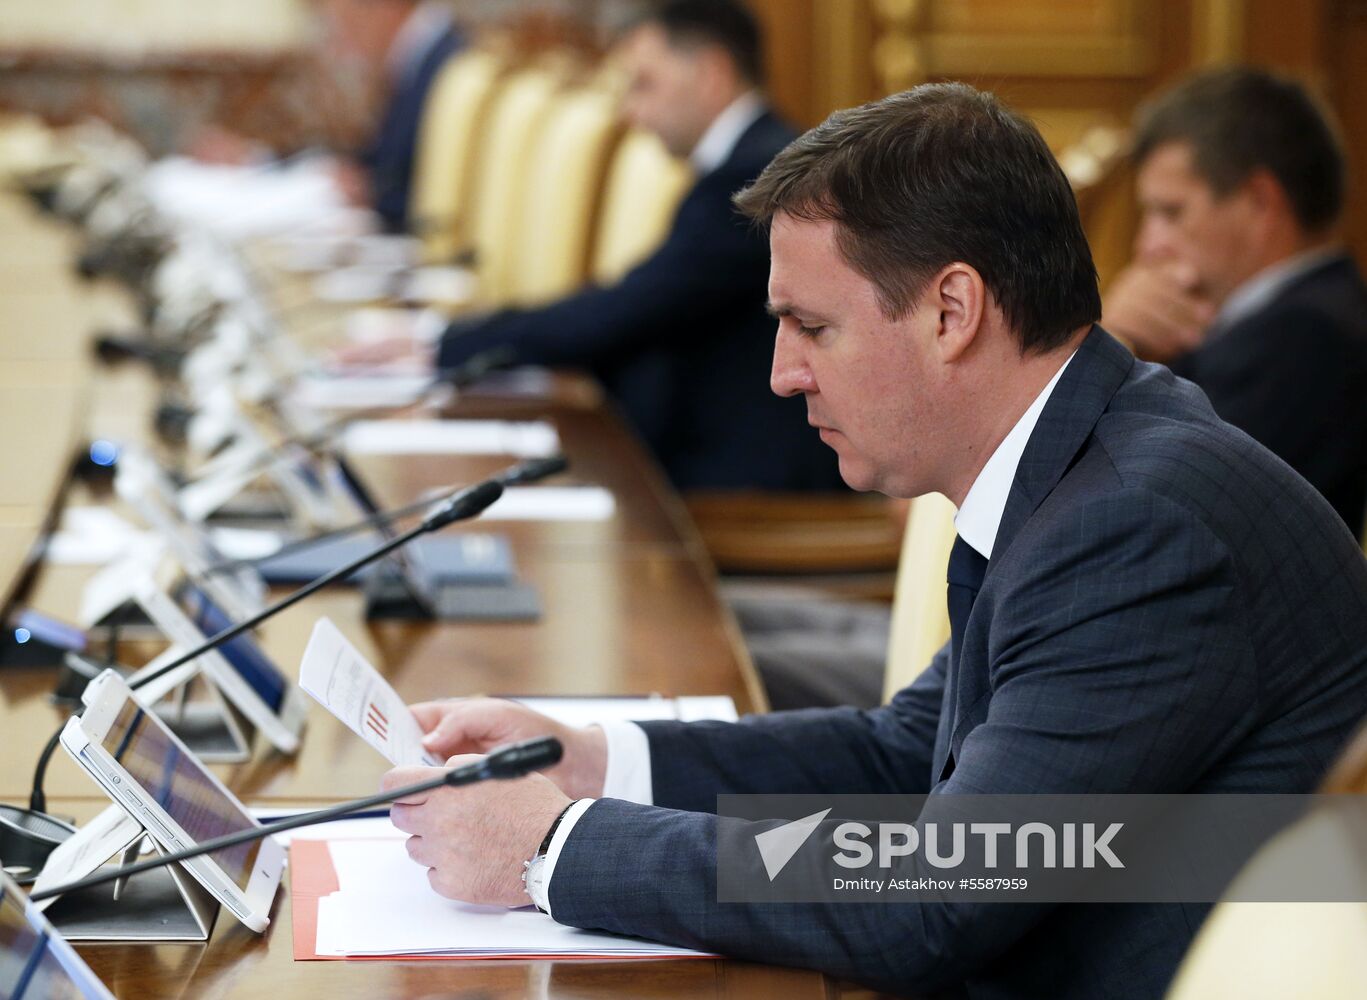 Prime Minister Dmitry Medvedev holds Government meeting